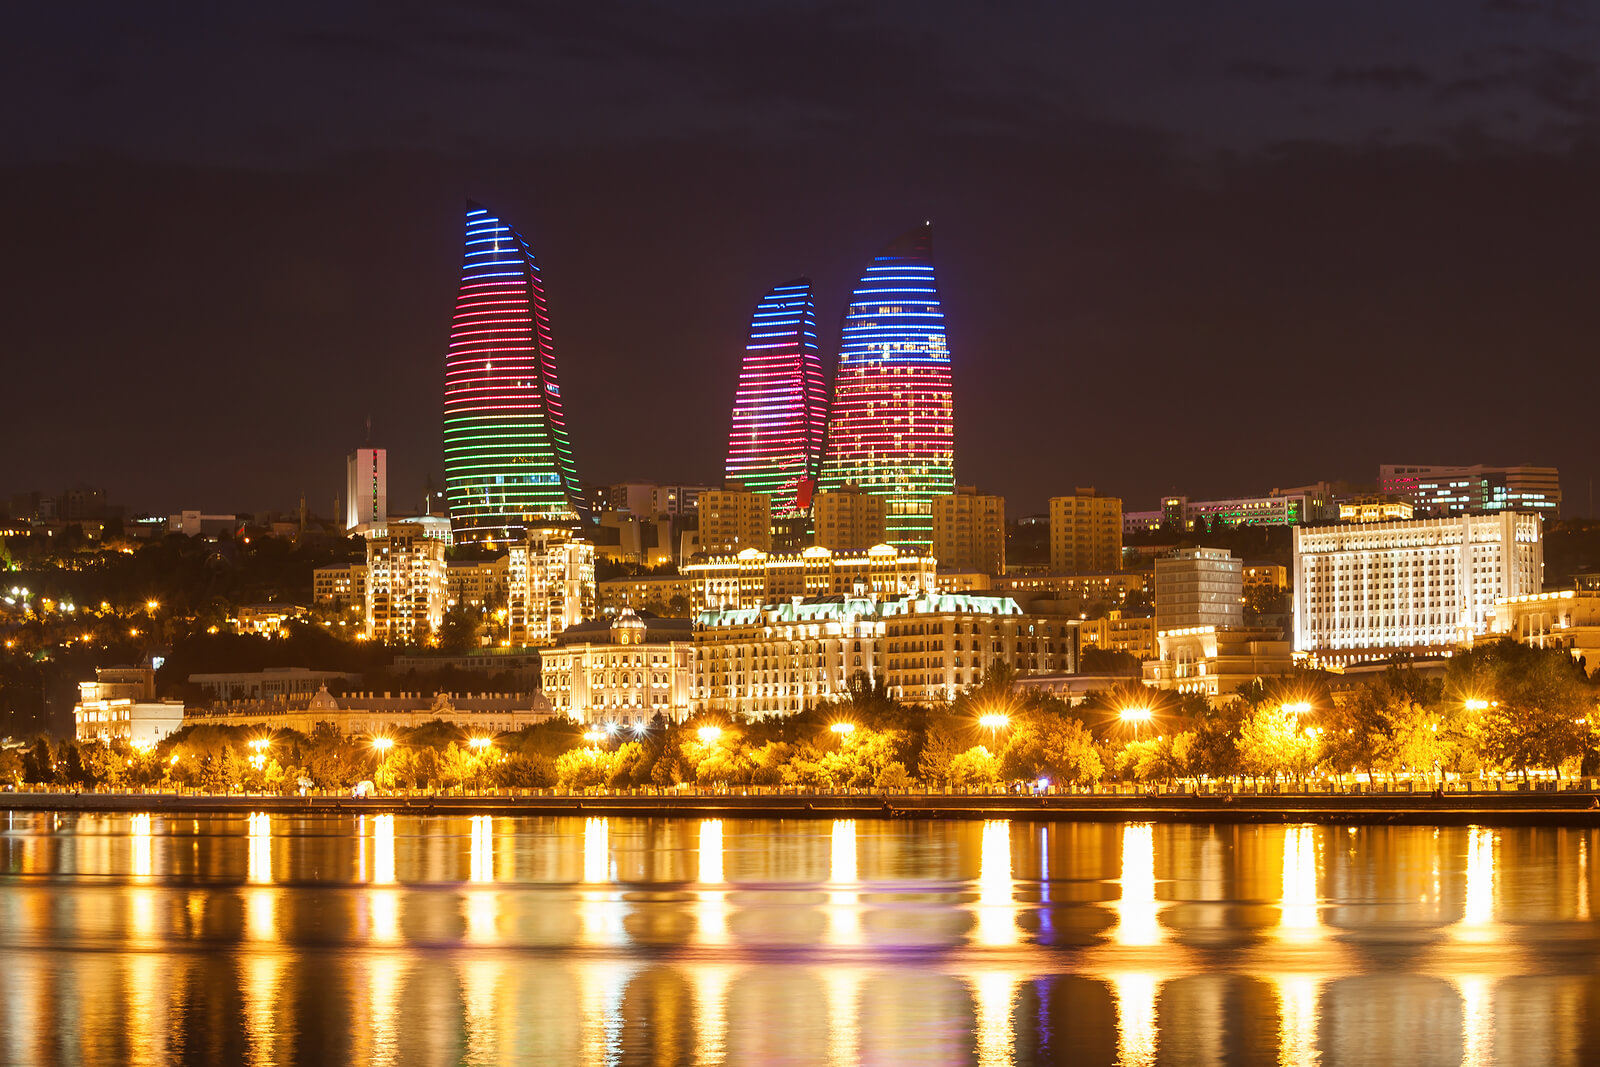 برج هاي شعله (Flame Towers) بندر باکو آذربایجان در شب